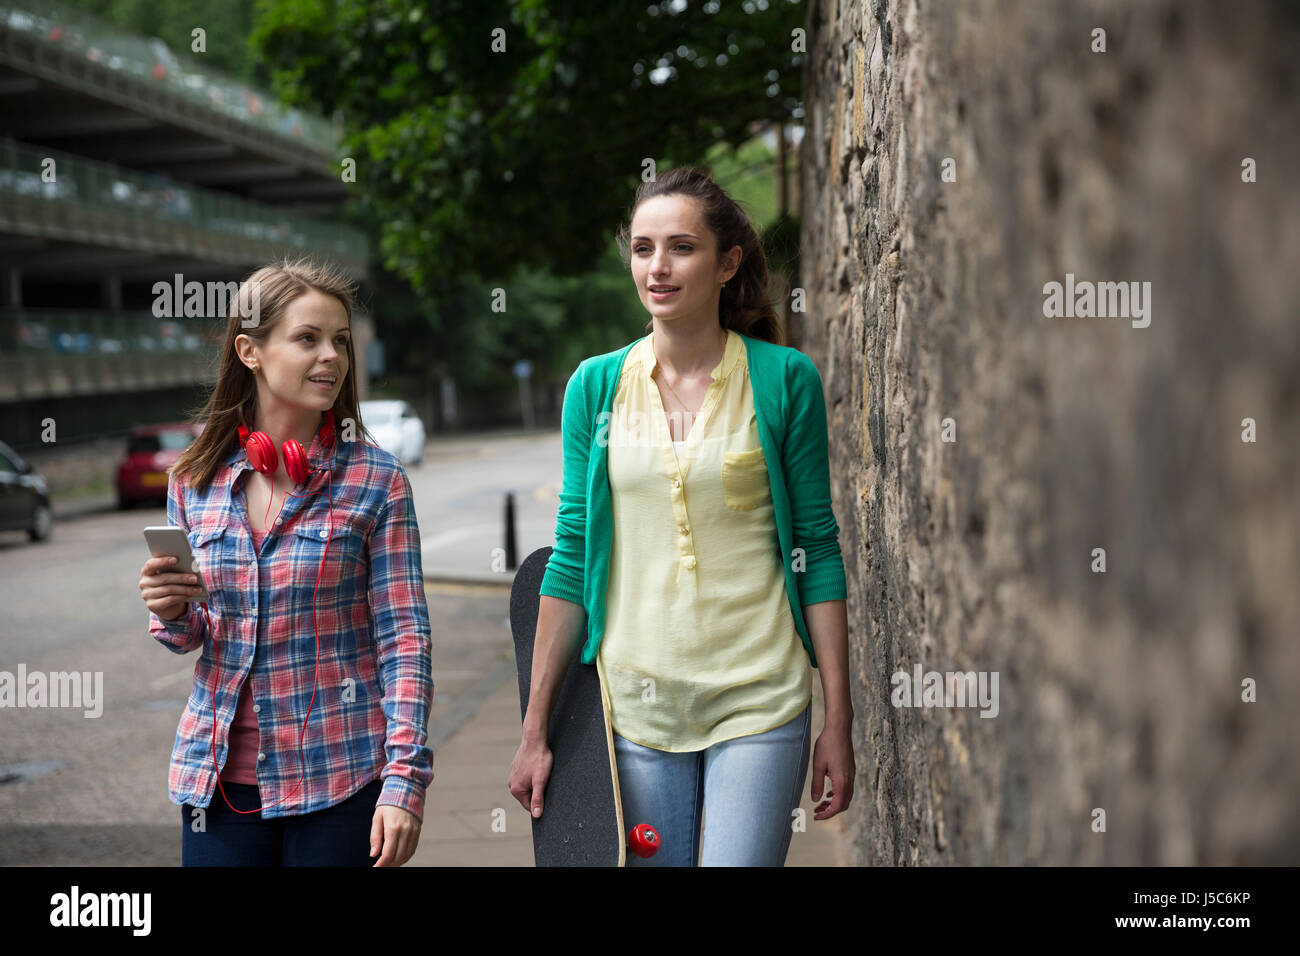 Deux femmes à la mode marche dans une rue de la ville, l'une avec une planche à roulettes. Banque D'Images